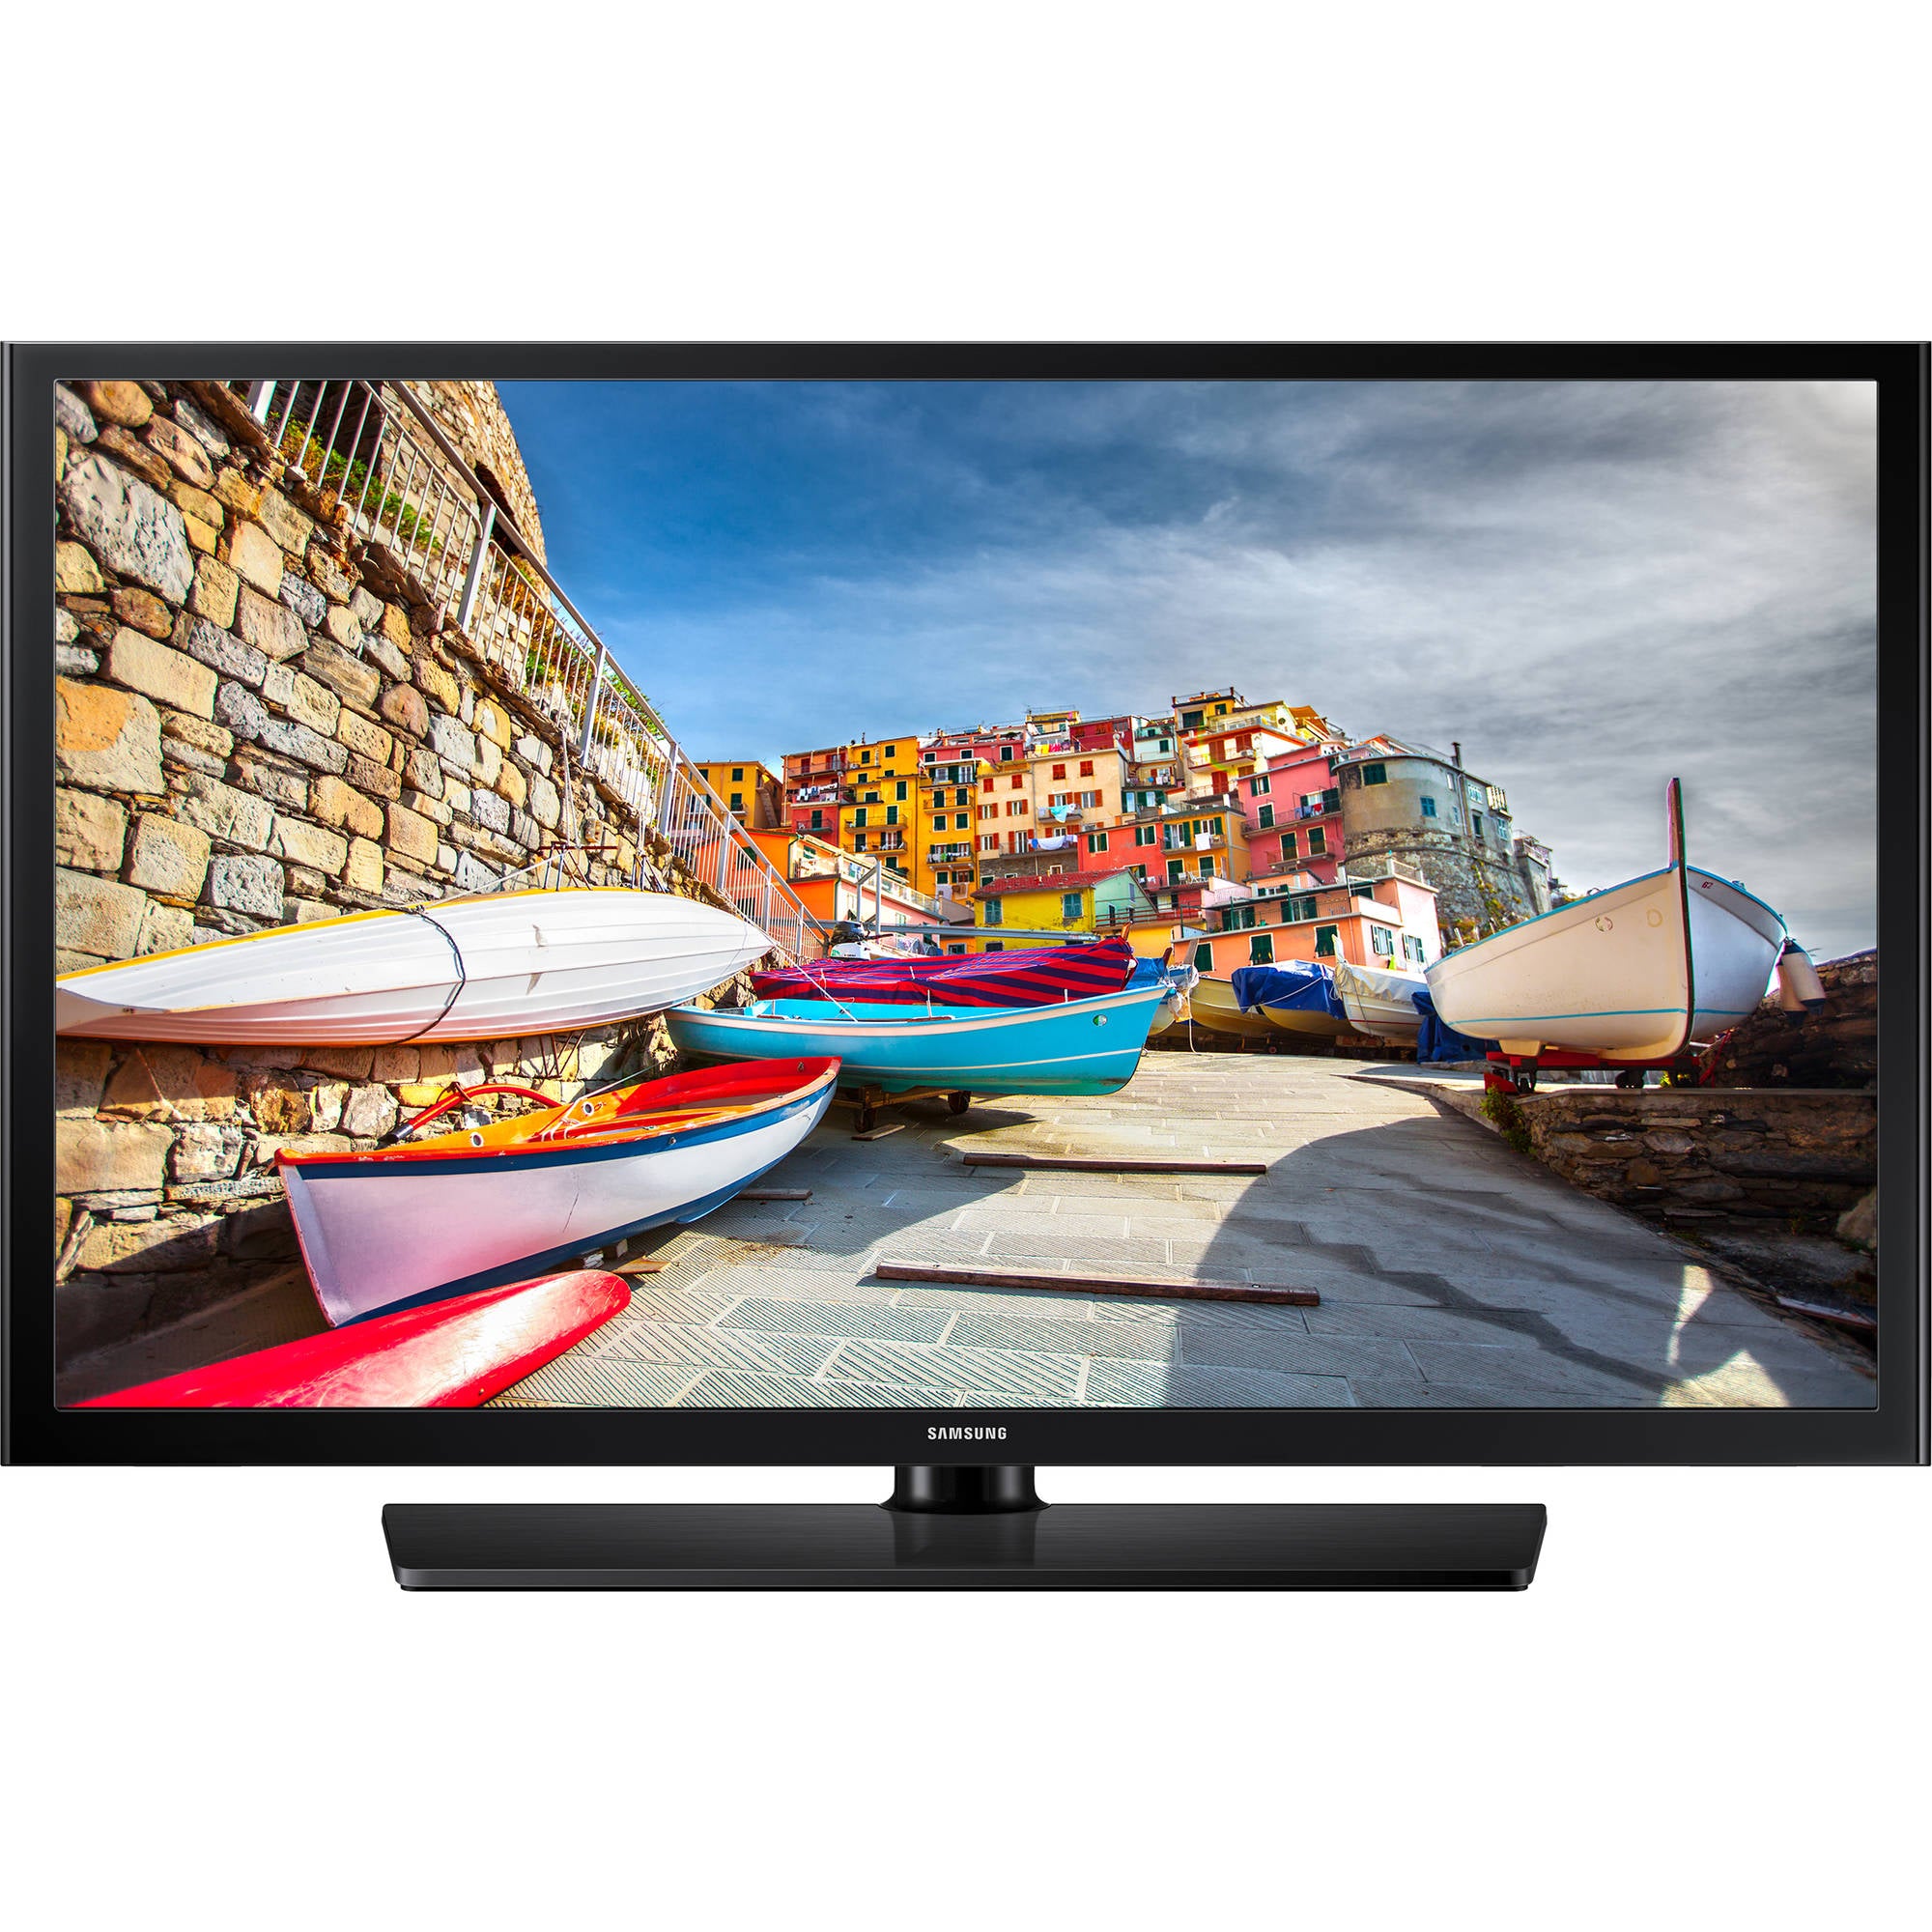 Samsung HG32NE460SFXZA 460 Series 32" Hospitality TV (Black)